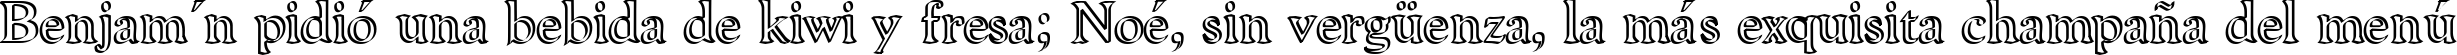 Пример написания шрифтом Niew CroMagnon Callig текста на испанском